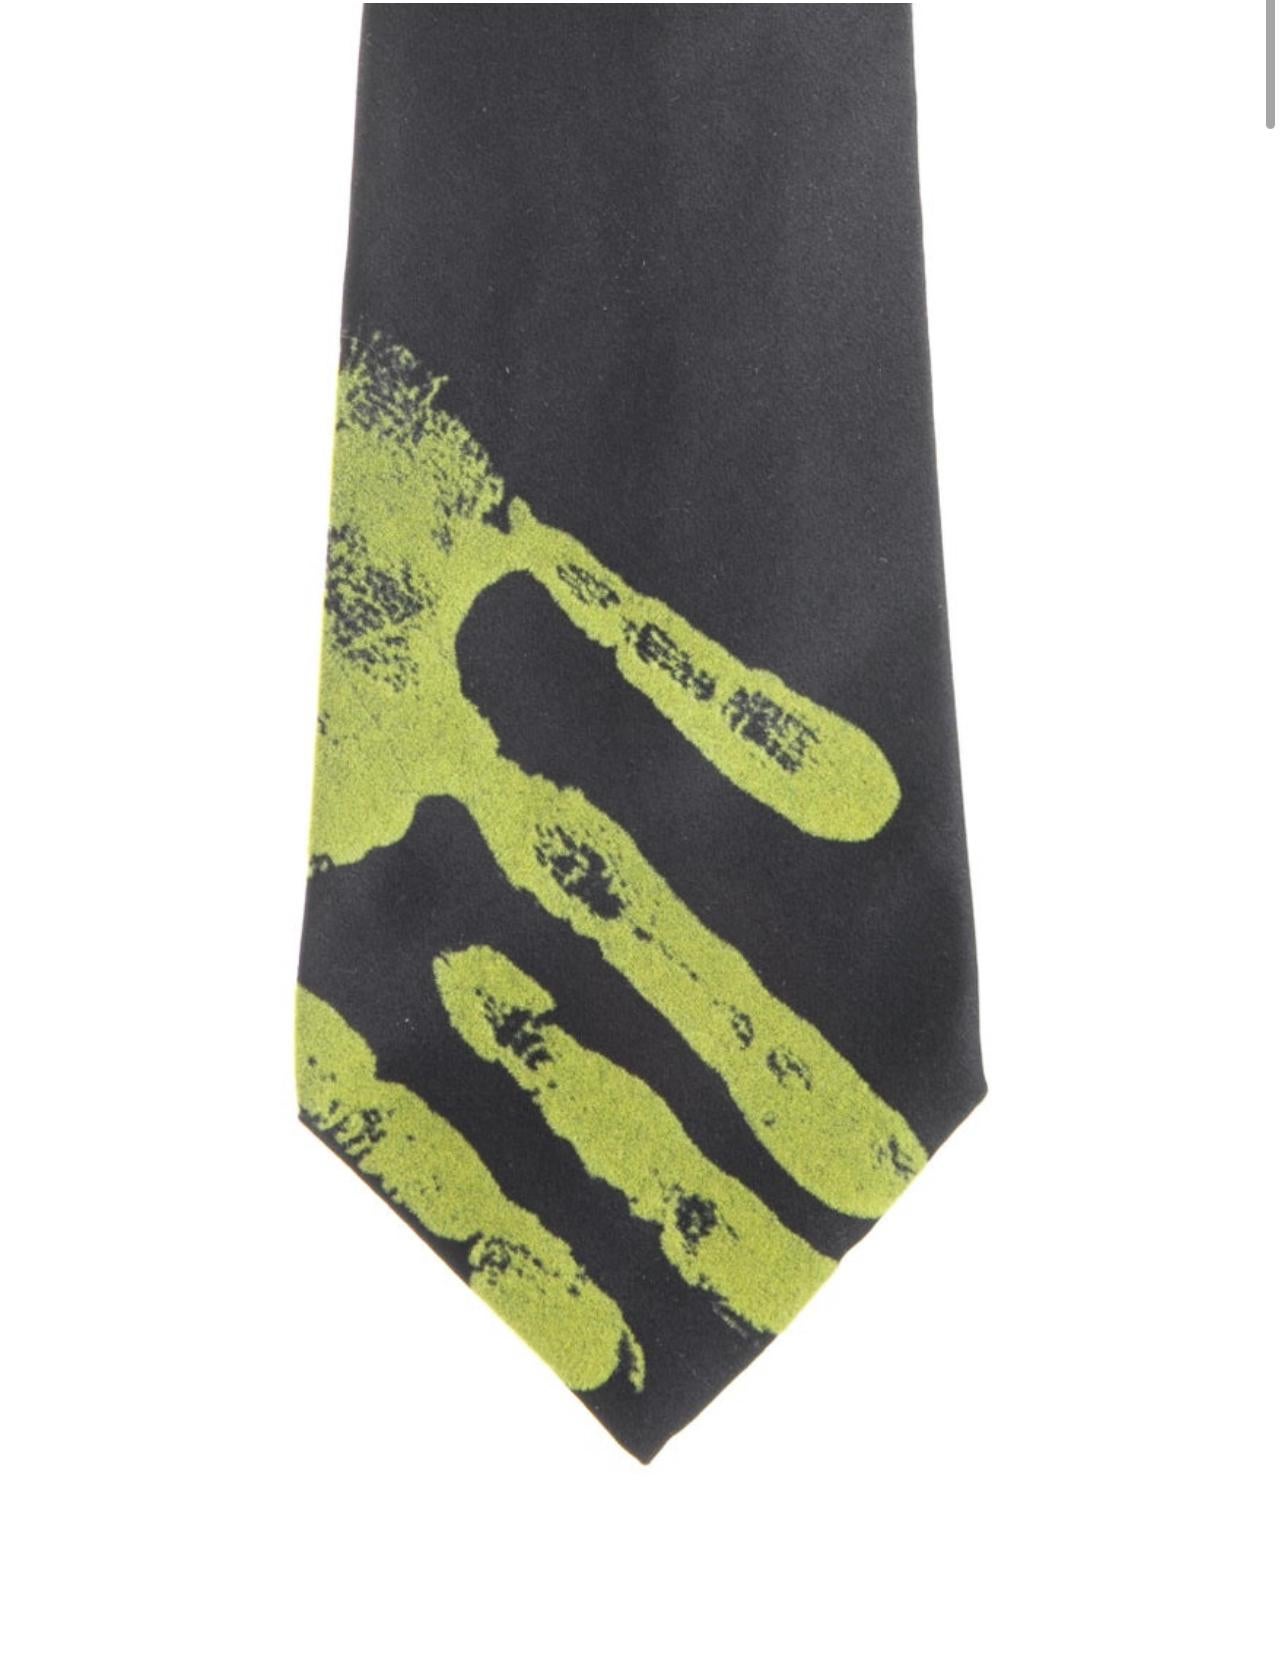 Noir Jean-Paul Gaultier - Cravate imprimée à la main, années 1990 